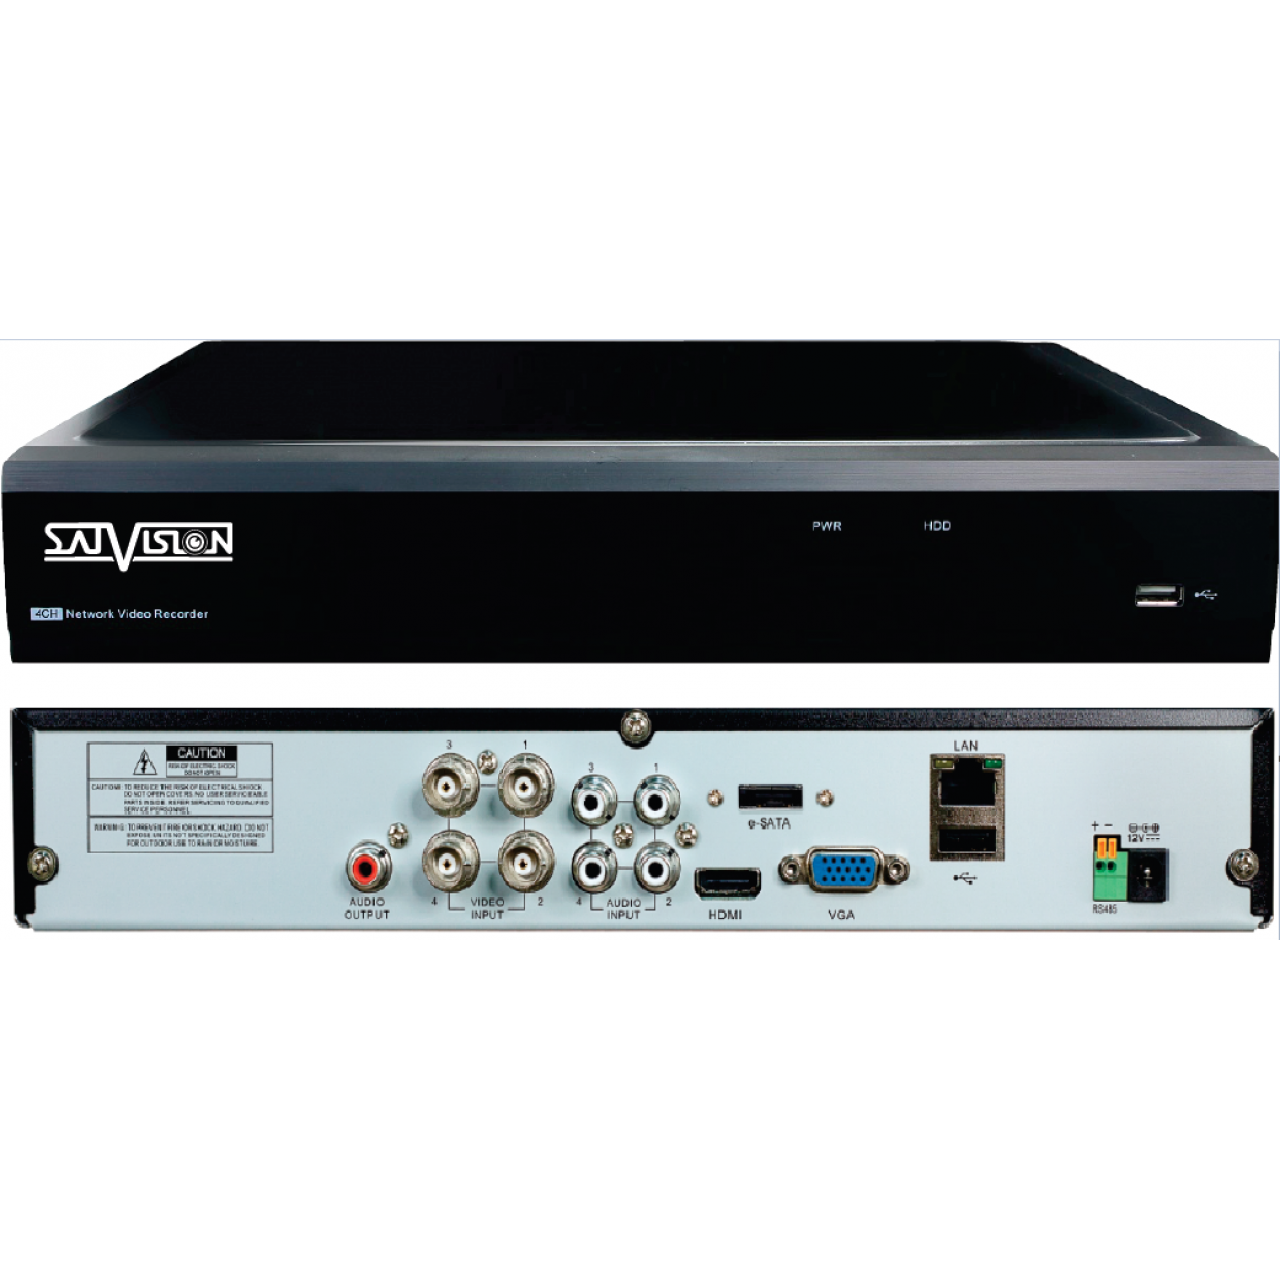 Гибридный 4-х канальный видеорегистратор Satvision SVR-4115P v2.0